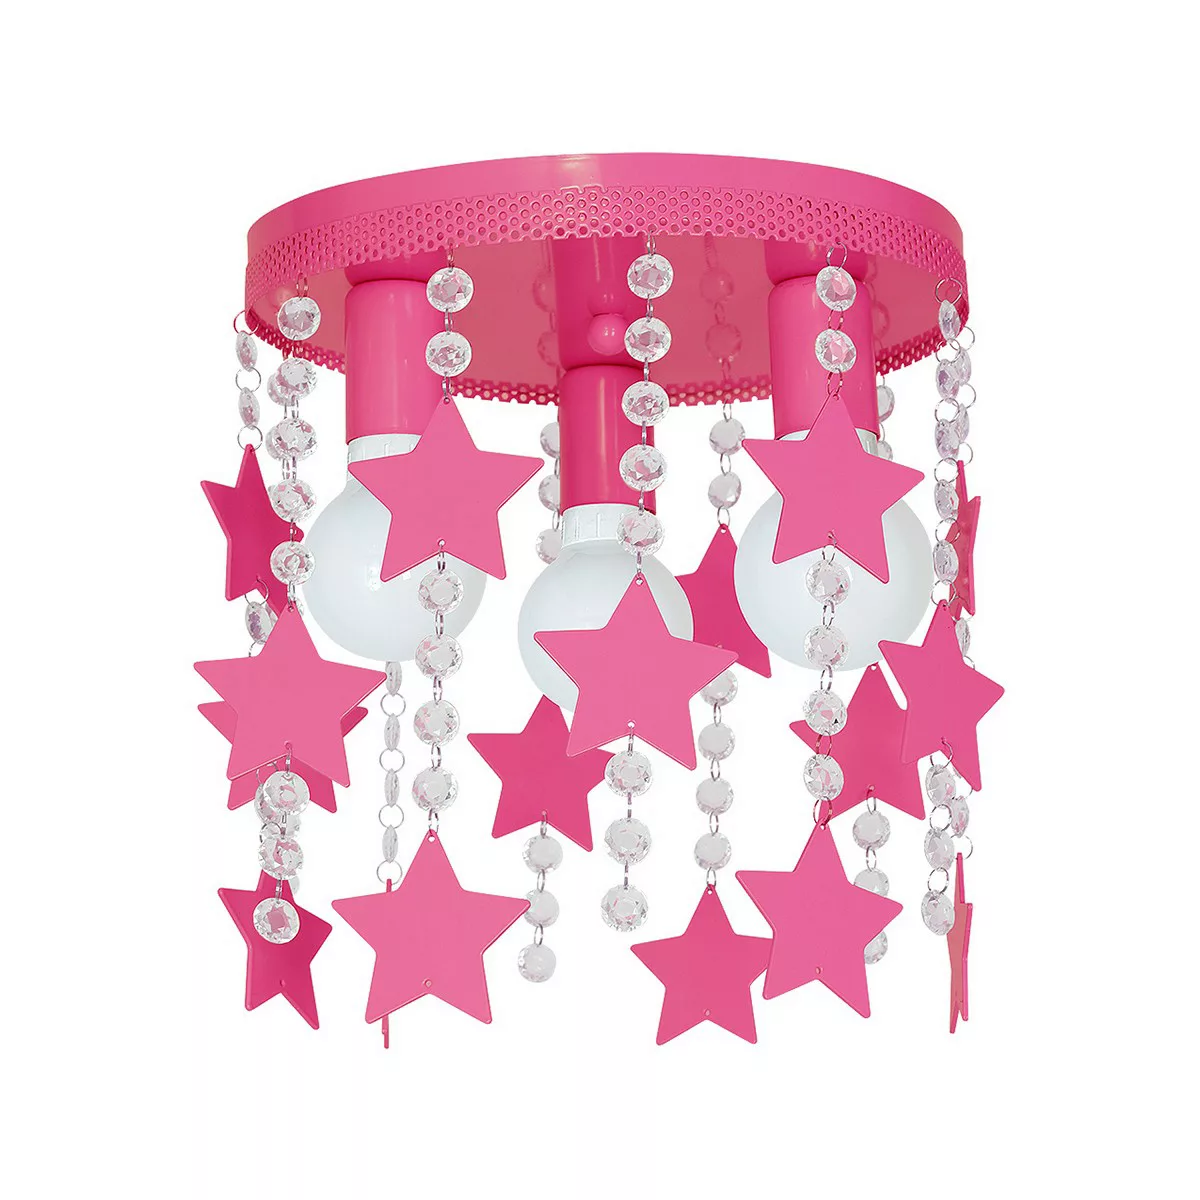 Kinderzimmerlampe STAR pink aus Metall/Kristall günstig online kaufen